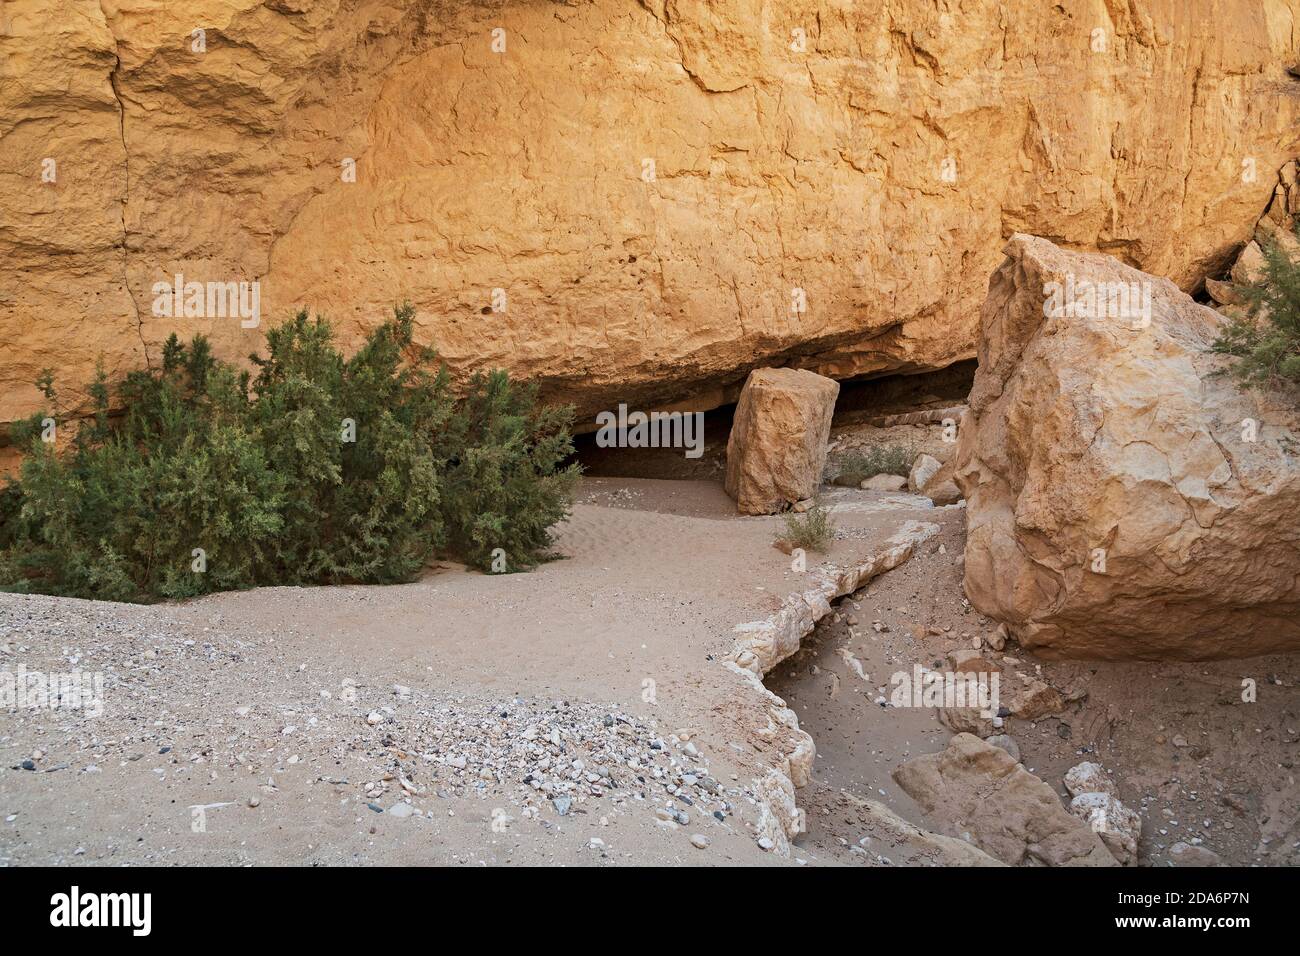 l'ingresso alla grotta nekarot in nahal nekarot in il cratere di makhtesh ramon in israele è quasi nascosto escursionisti da cespugli e massi Foto Stock